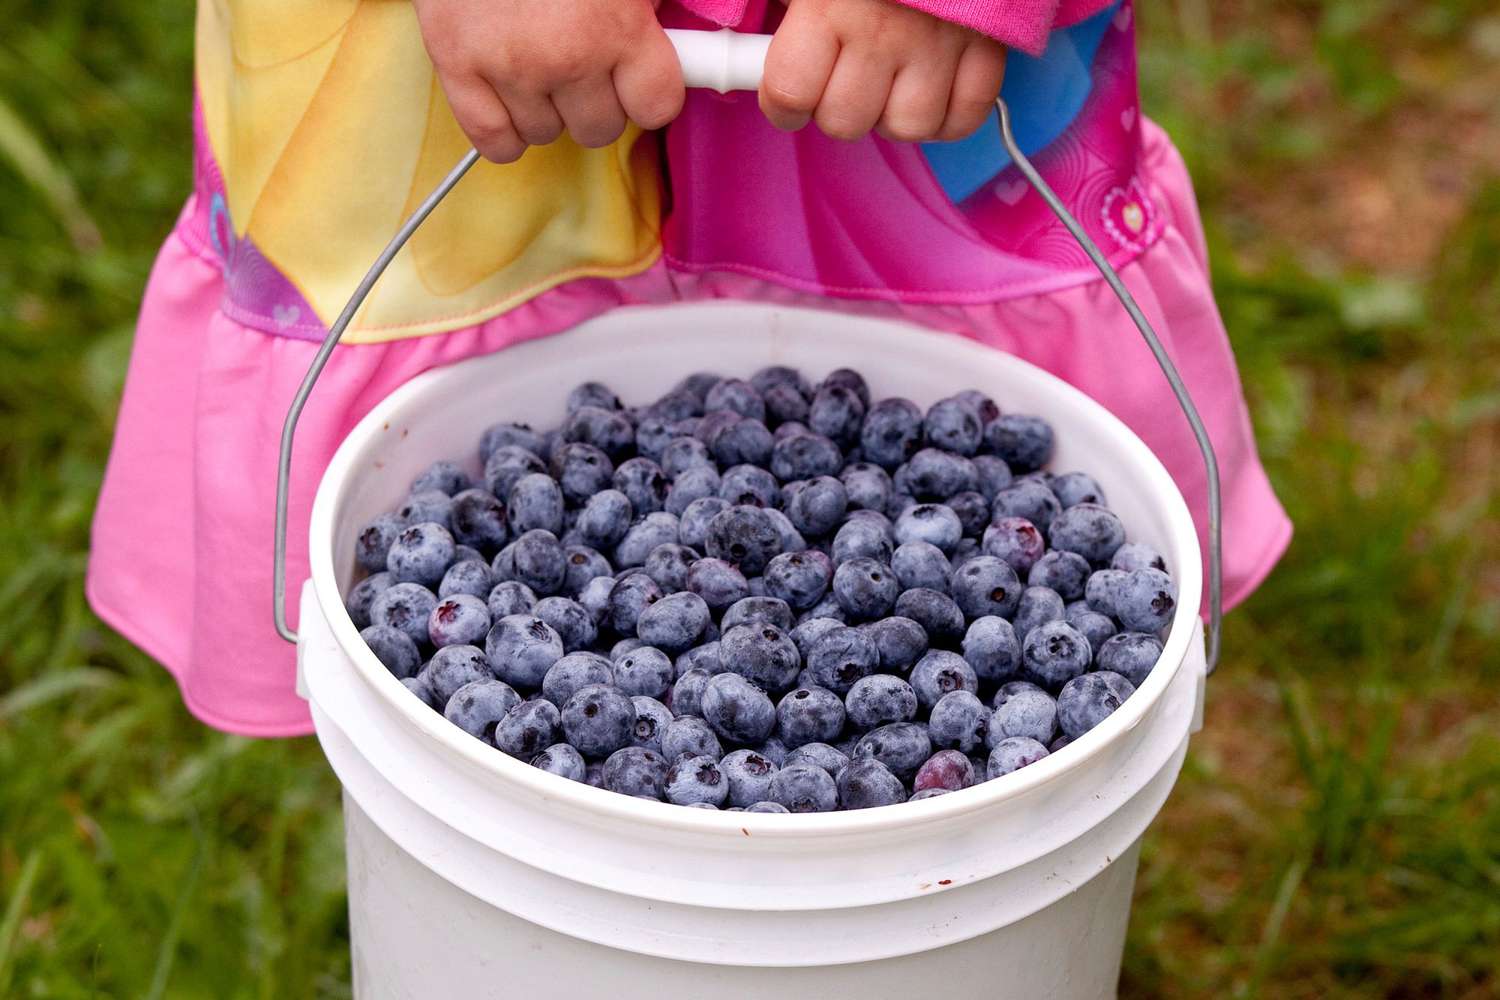 DeGrandchamp Farms blueberry picking